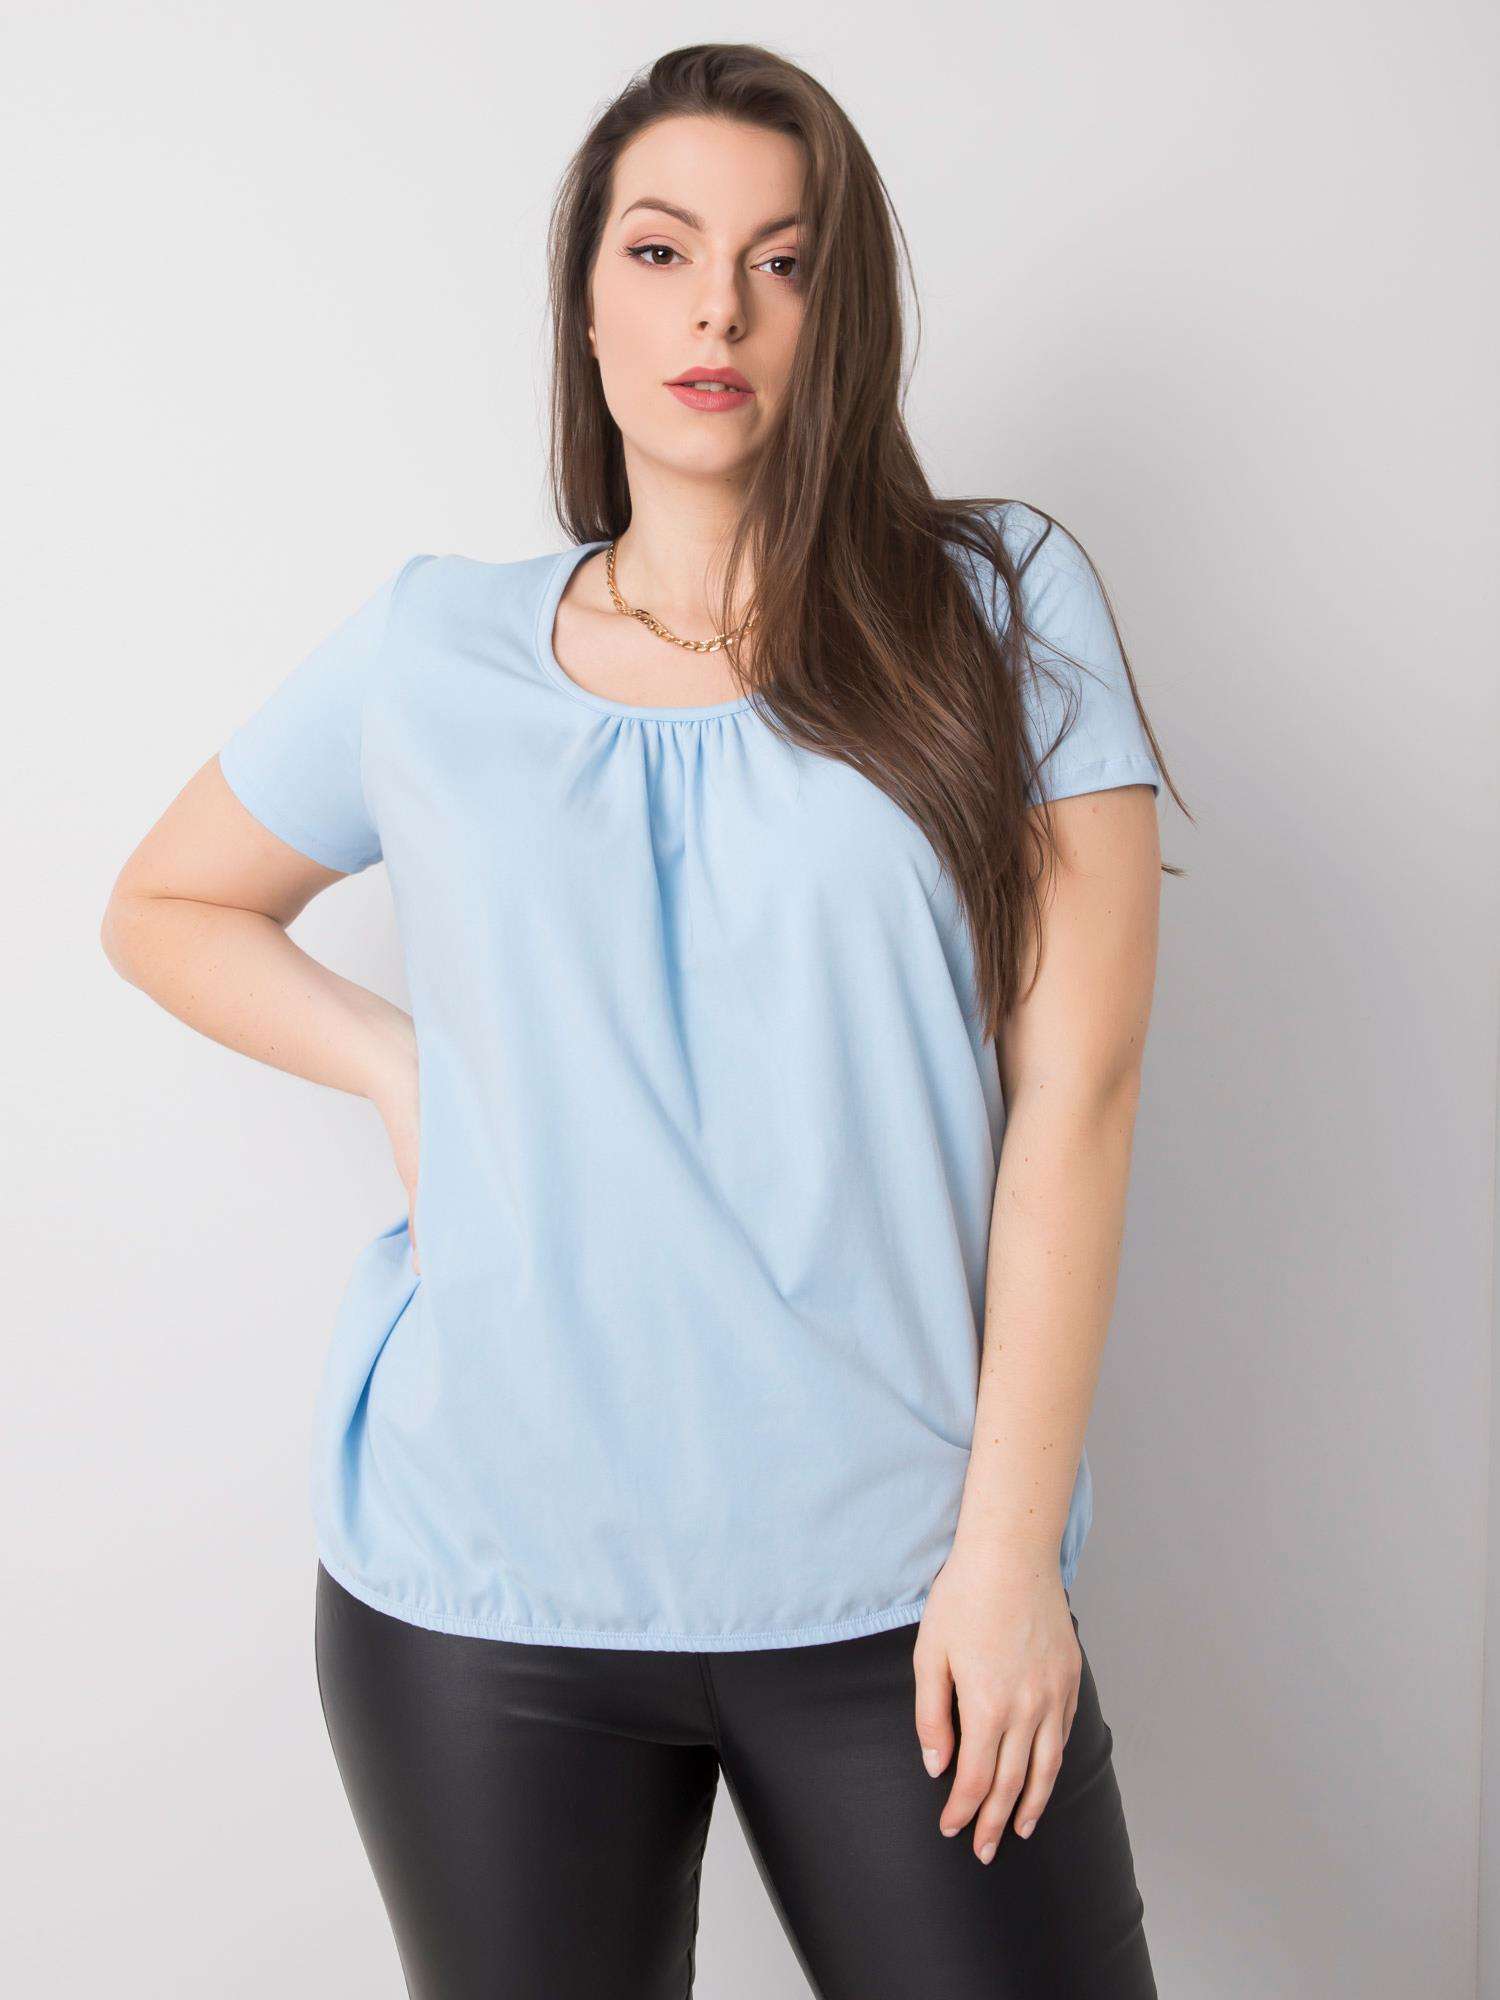 Světle modré dámské tričko s krátkým rukávem RV-TS-6320.85P-blue Velikost: 3XL